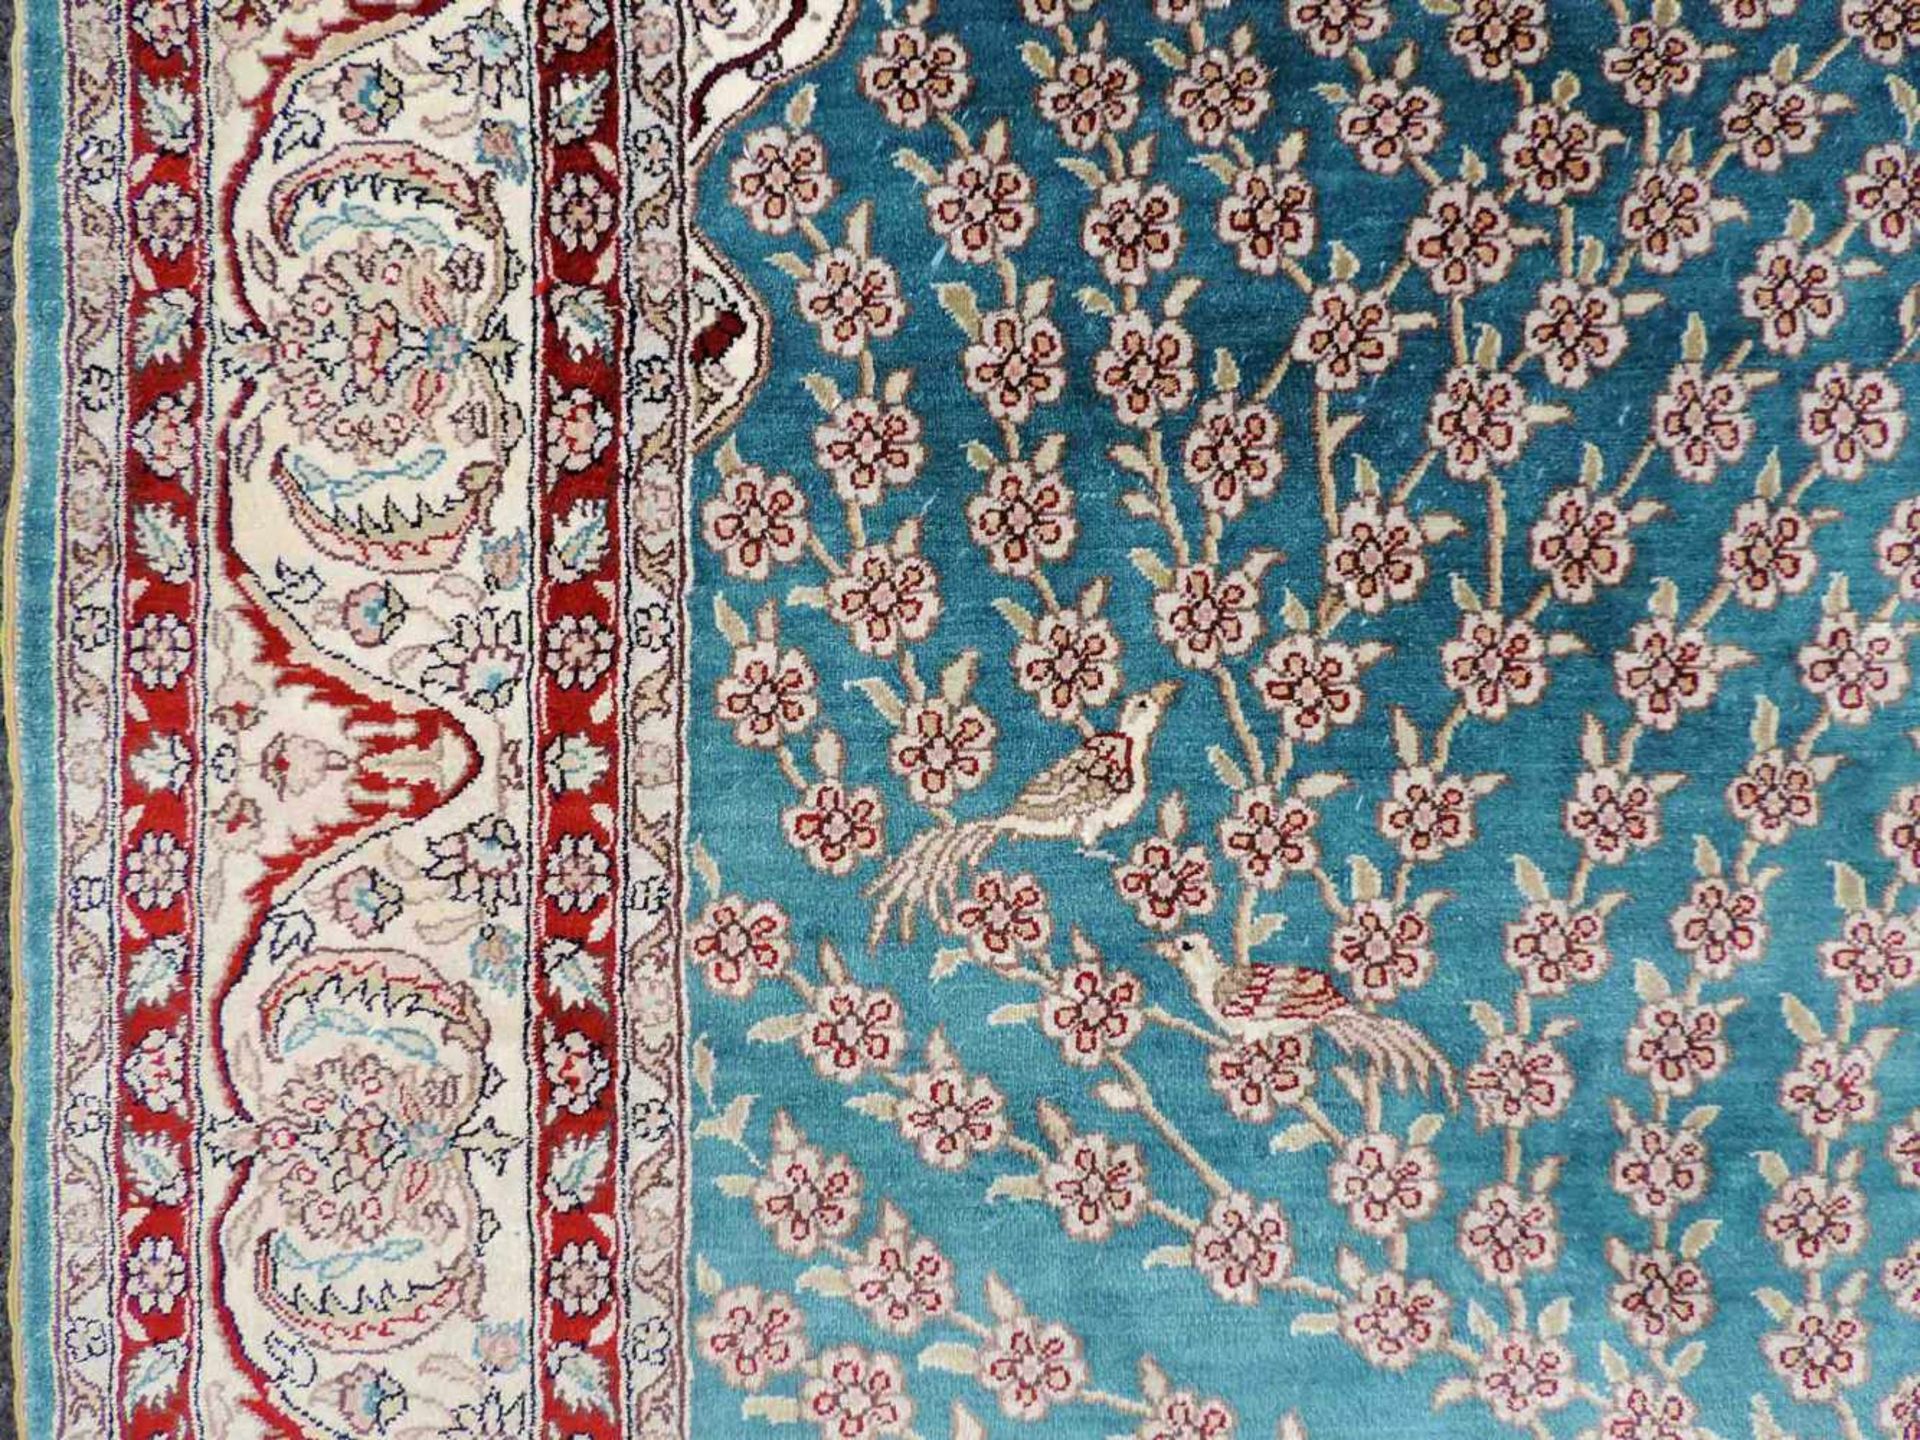 Gebetsteppich, Seide auf Seide. Sehr feine Knüpfung. 183 cm x 124 cm. Handgeknüpft. Kayseri - - Bild 4 aus 9